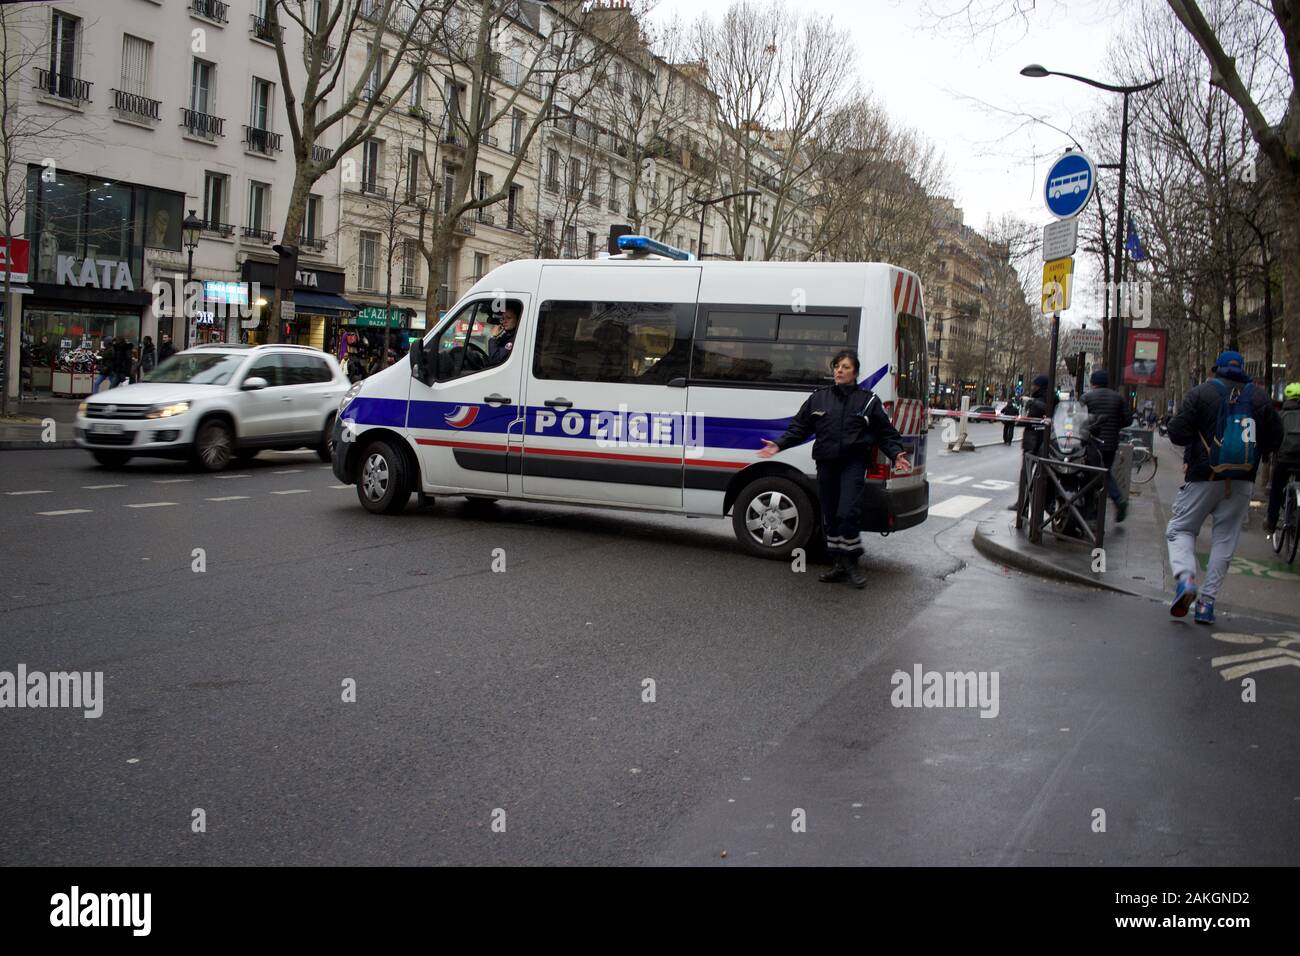 Die französische Polizeibeamte steht an ihrem Fahrzeug, während die Straße wegen der von der Regierung vorgeschlagenen Rentenreformen für den Verkehr gesperrt ist, was Streikaktionen hervorrief (la grève), Boulevard Barbès, 75018, Paris, Frankreich, 9. Januar 2020 Stockfoto